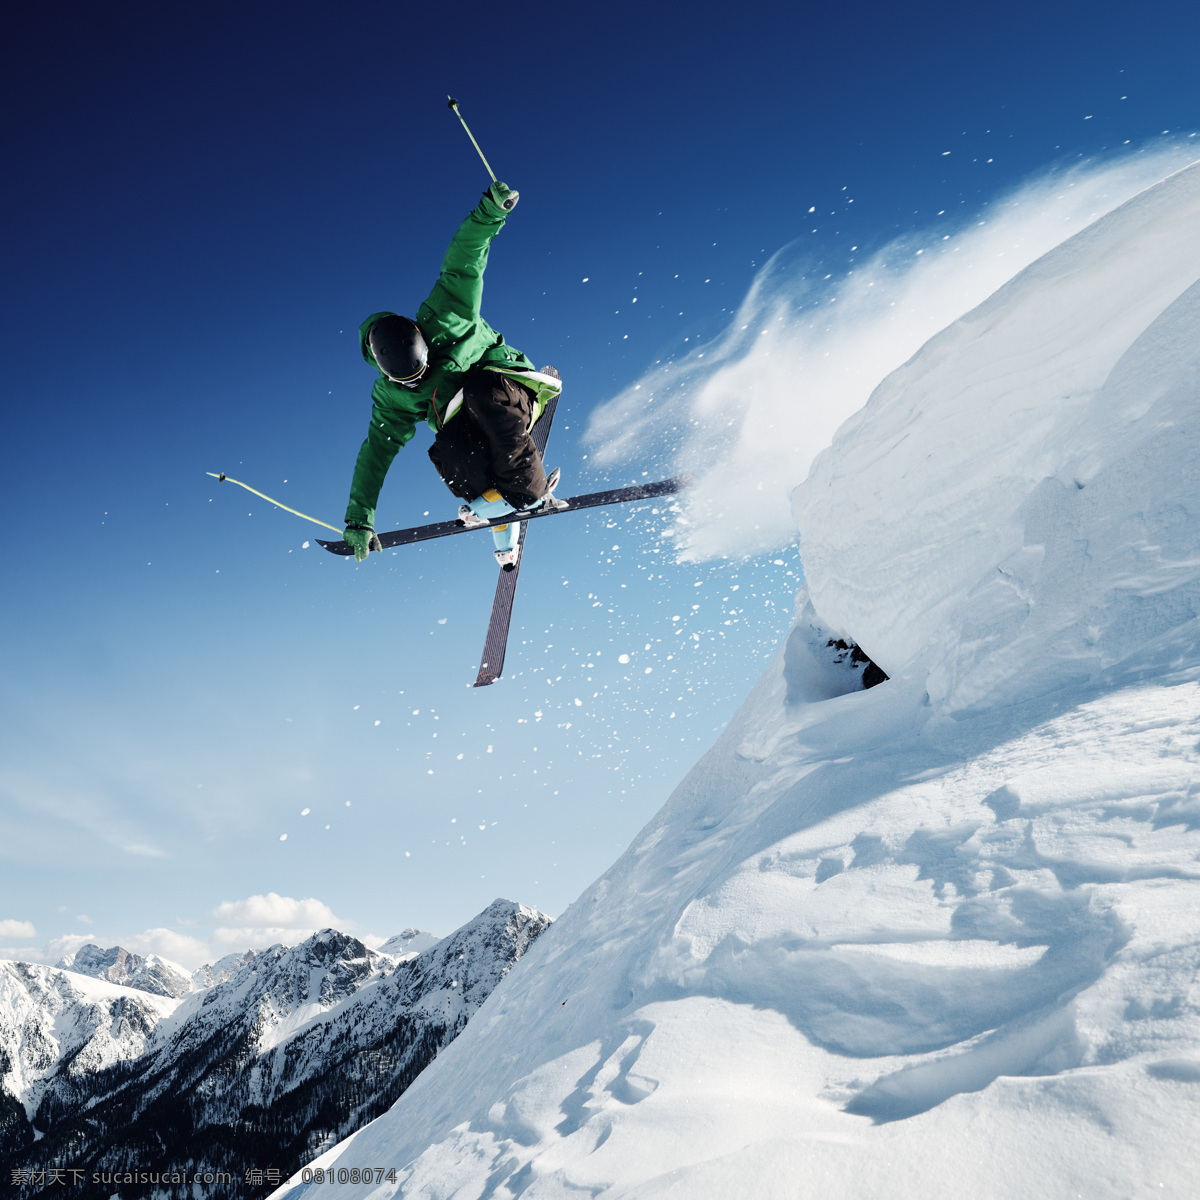 滑雪 冰雪运动 高山滑雪 蓝天 滑雪装备 滑雪运动 雪 滑雪场 运动 健身 保健 雪地 白雪 人物 冬天 风景 冬季 寒冬 雪山 冰雪 冬季运动 极限运动 滑雪运动员 体育运动 文化艺术